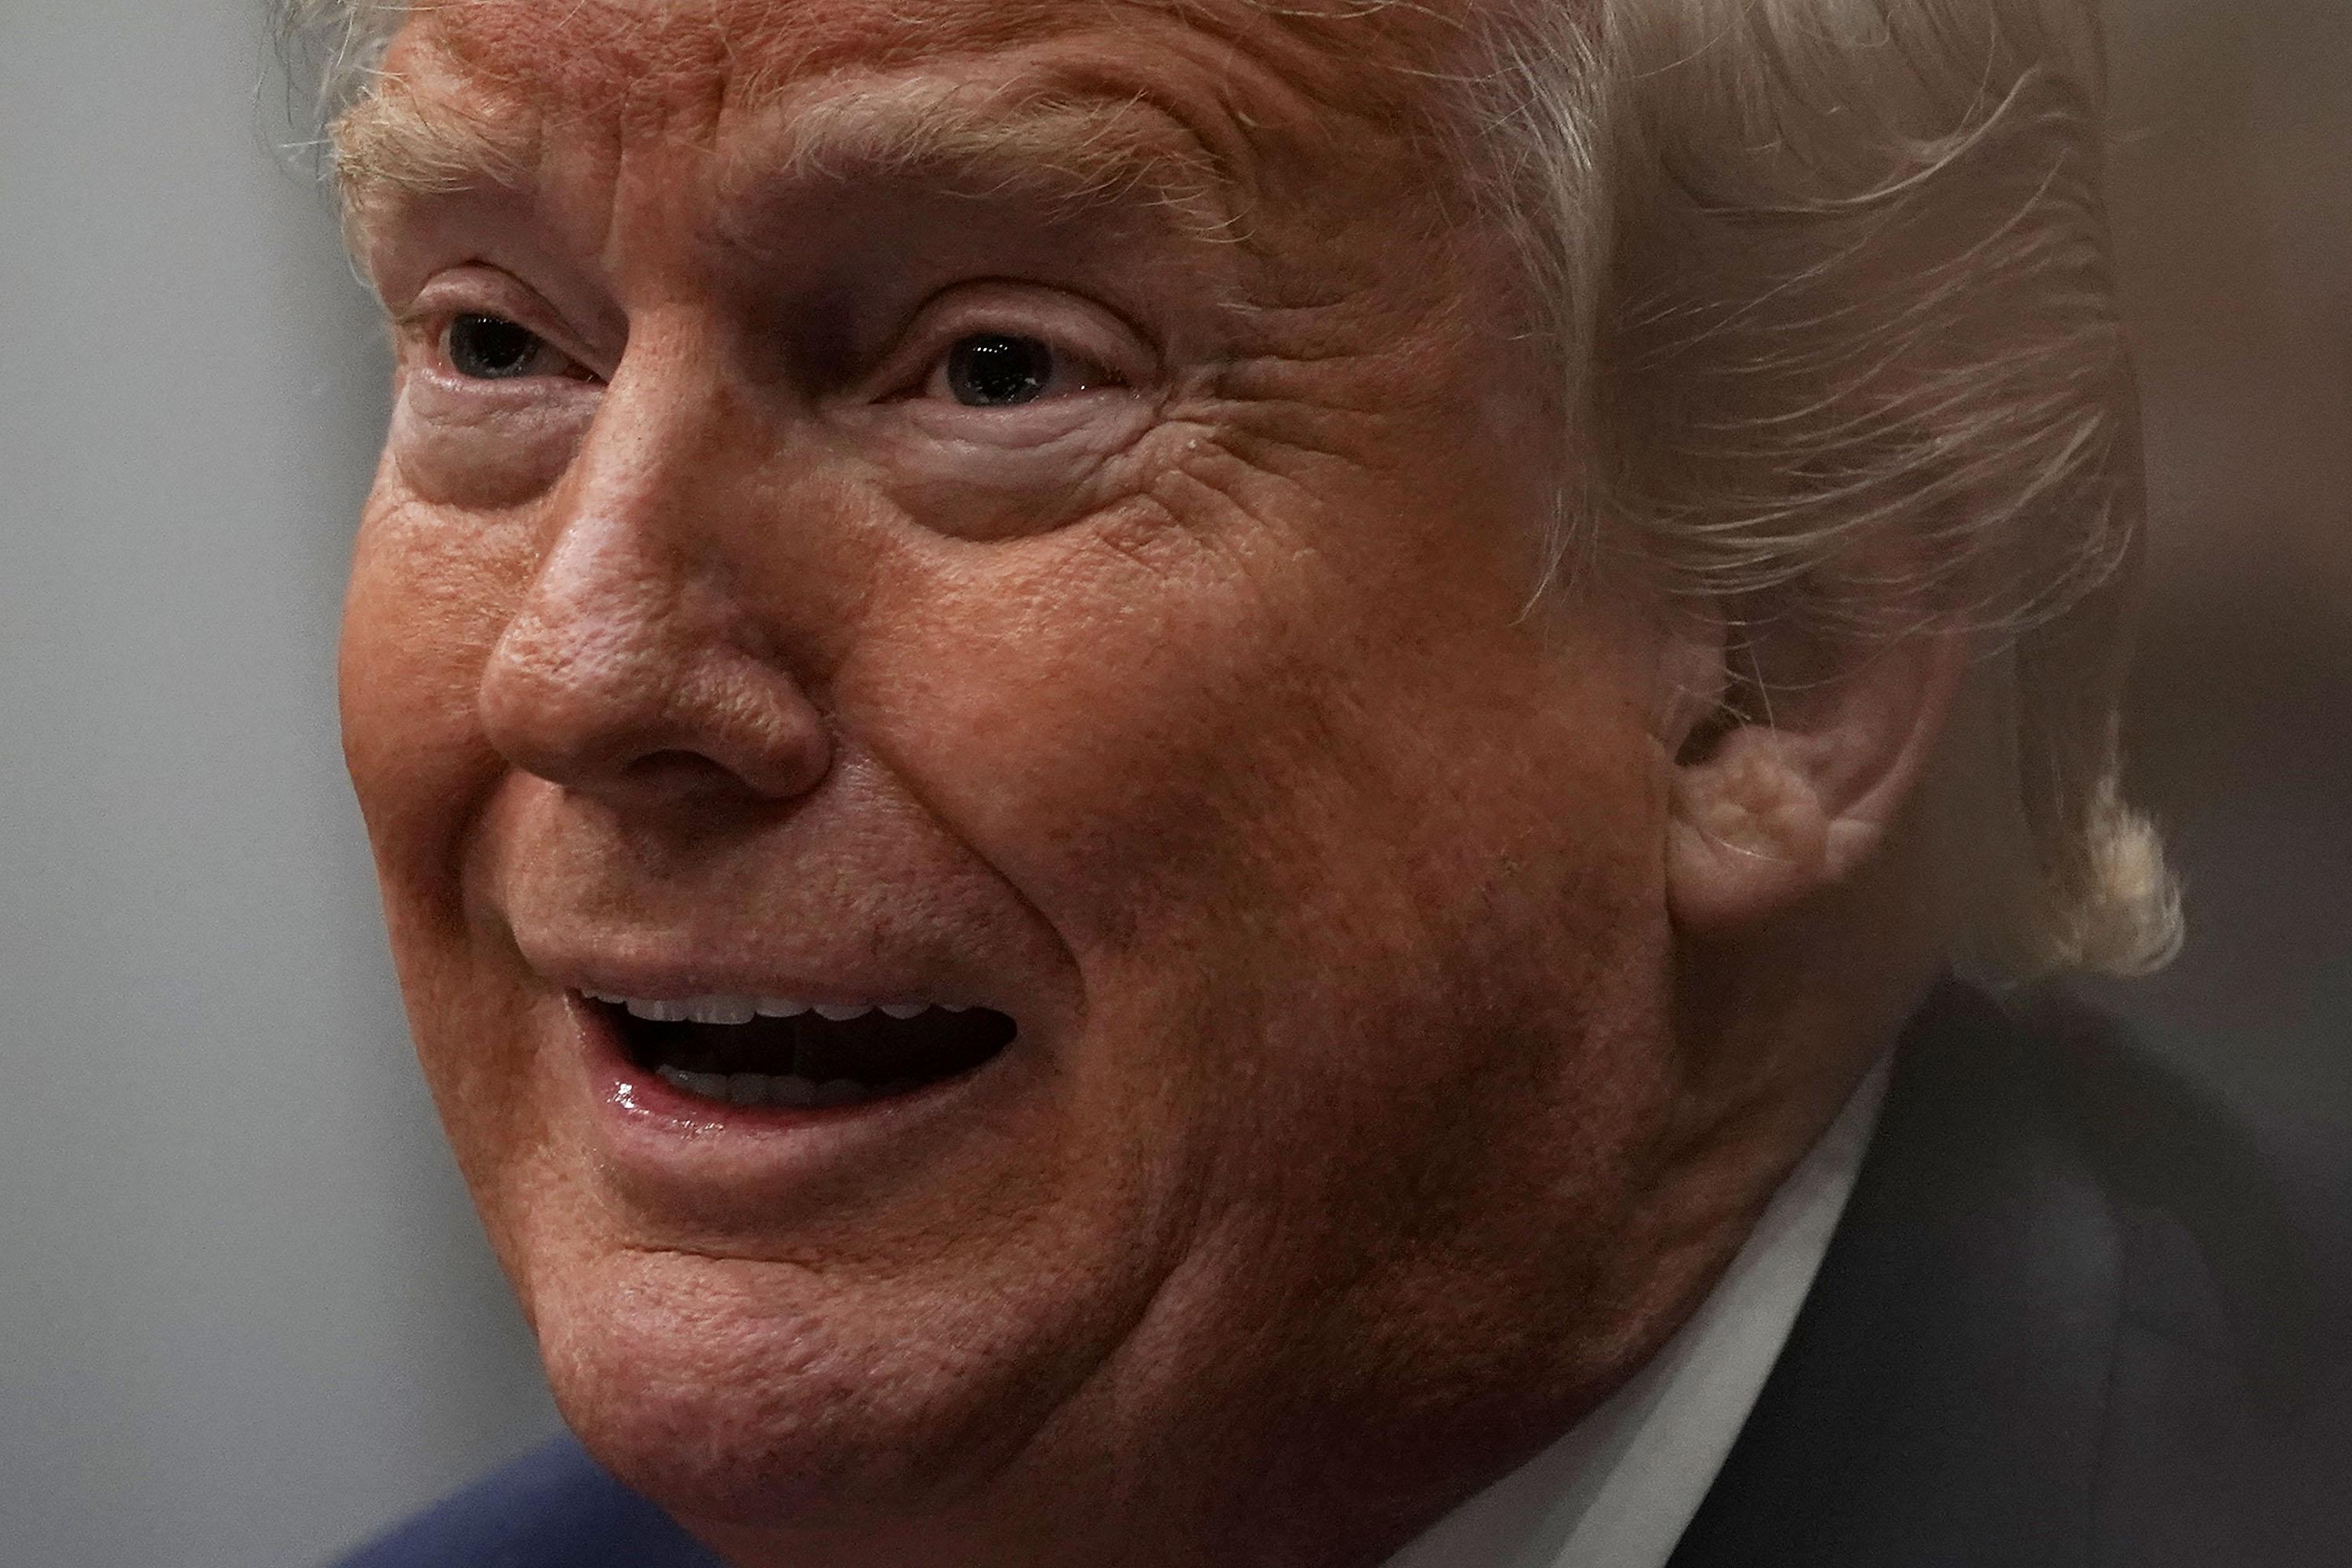 Extreme closeup of Donald Trump's face